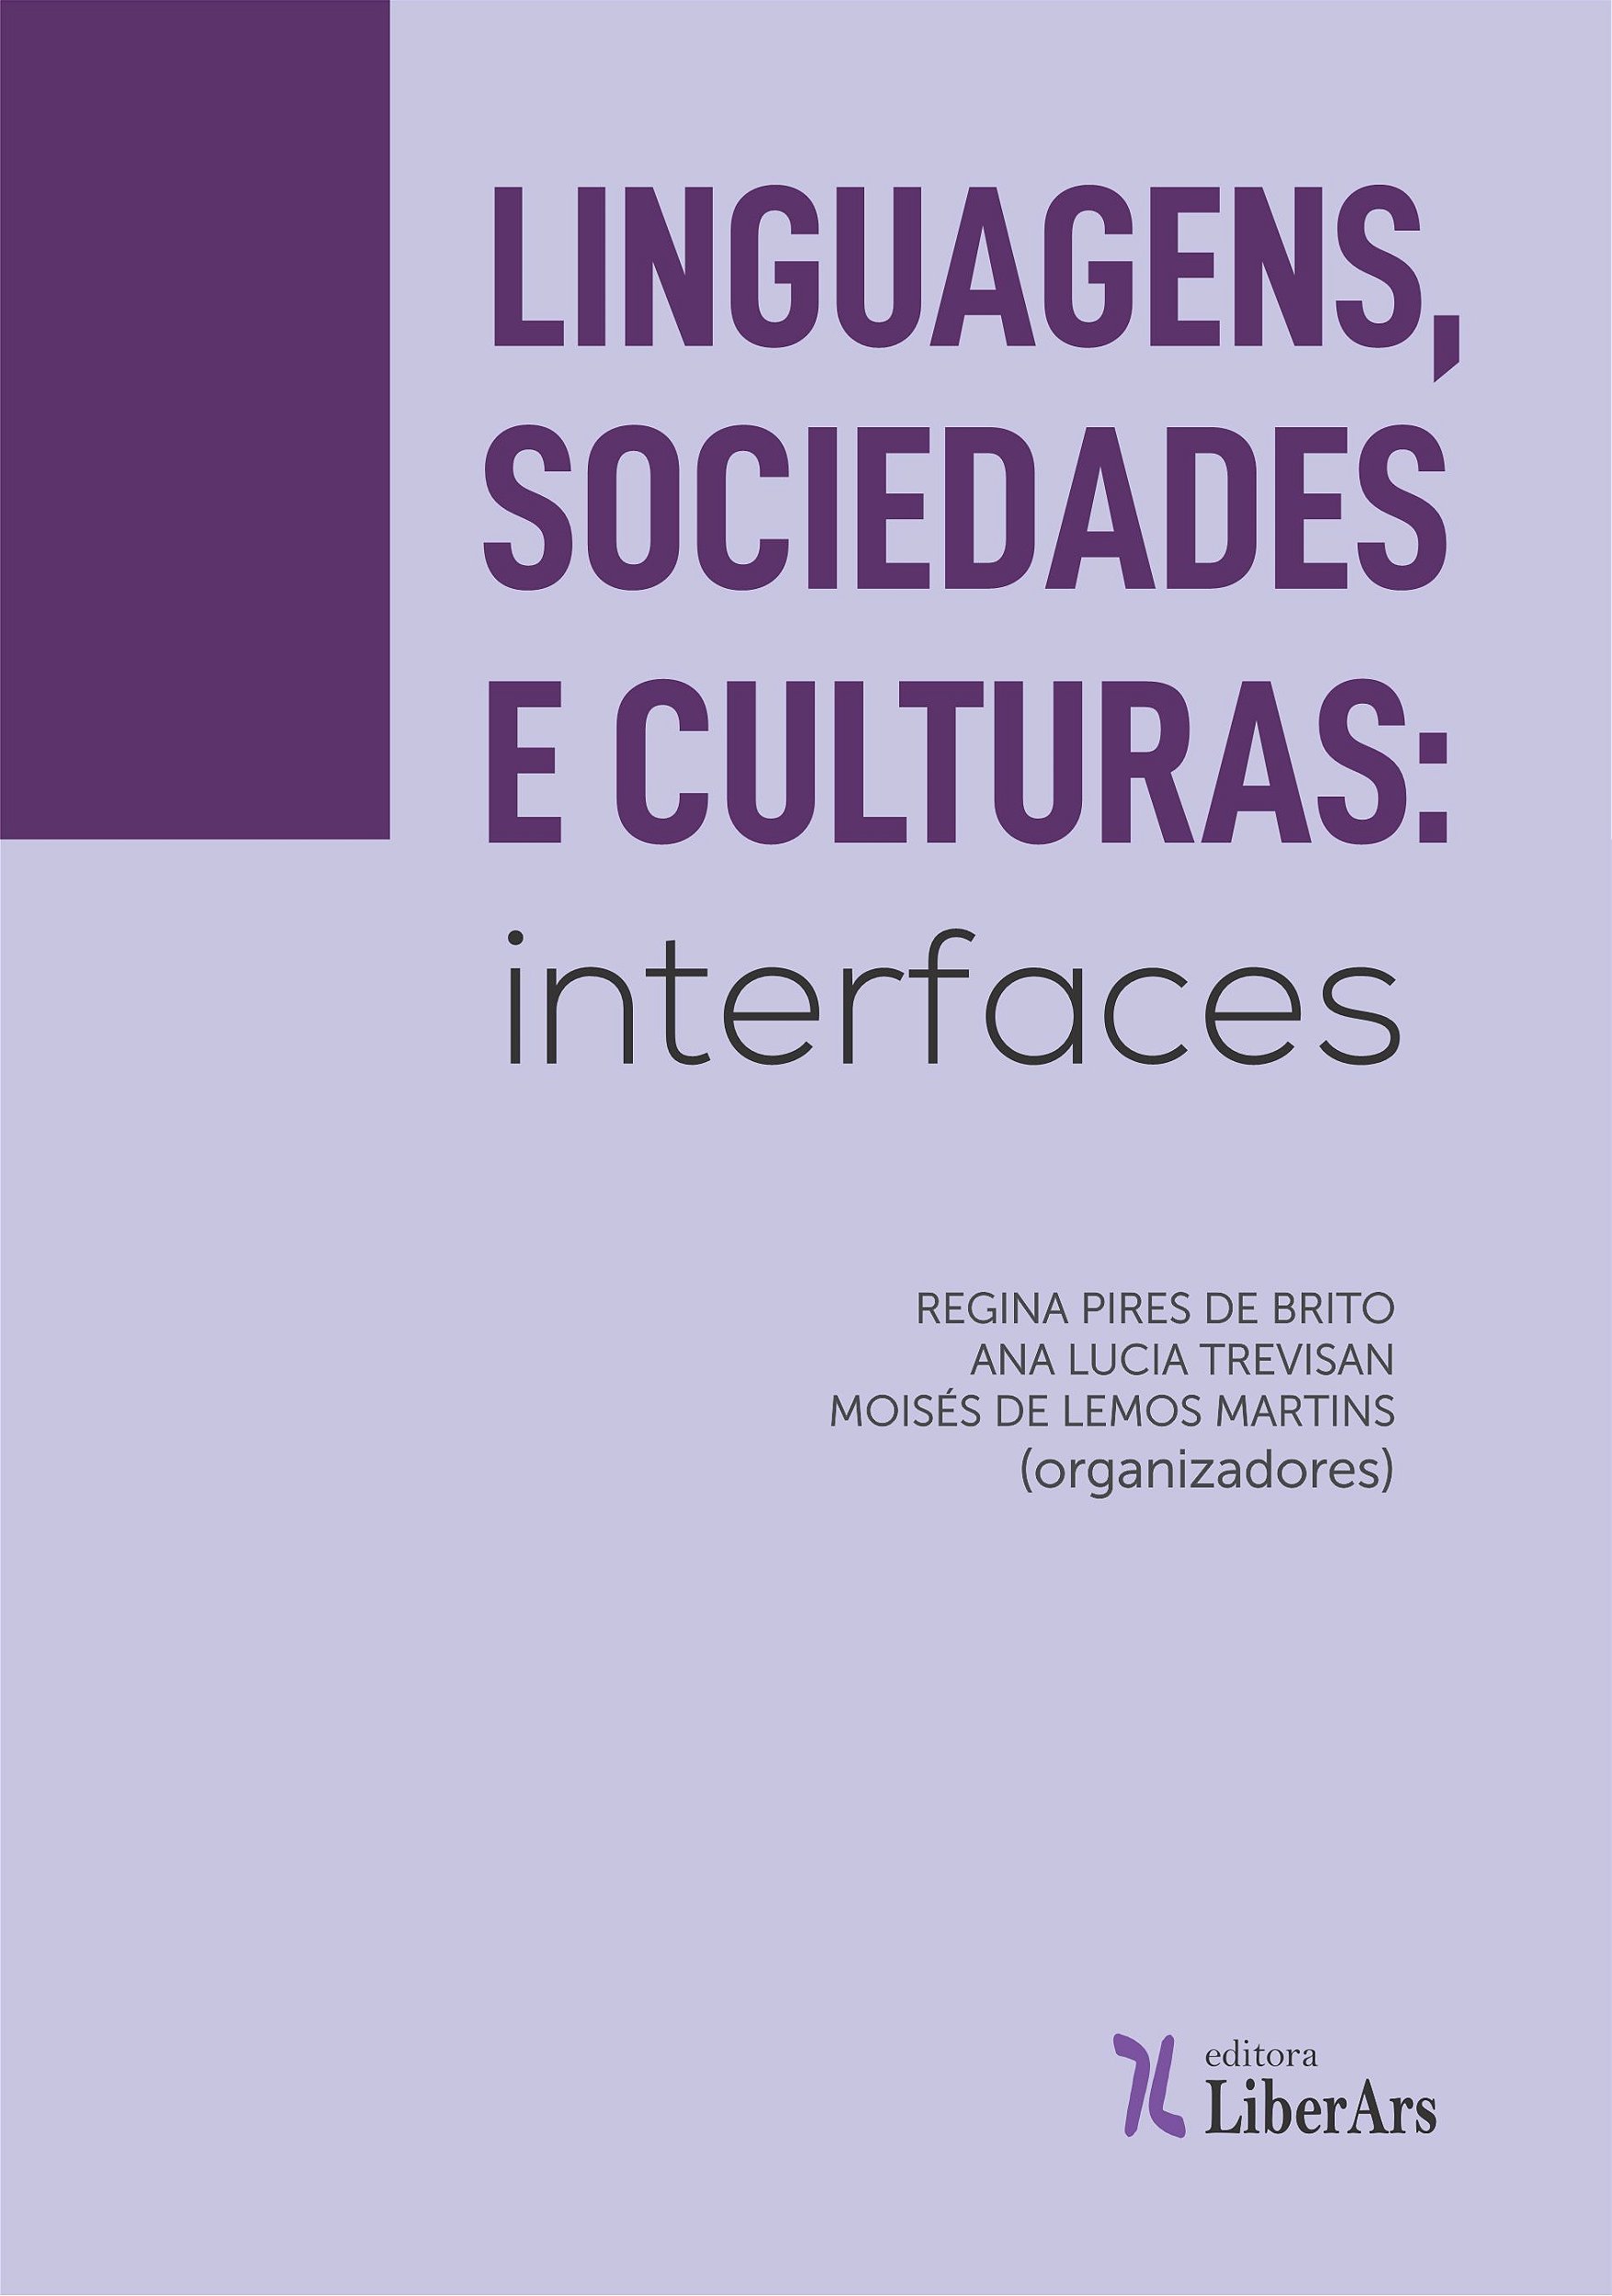 Linguagens e culturas - Linguagens e códigos by Ação Educativa - Issuu